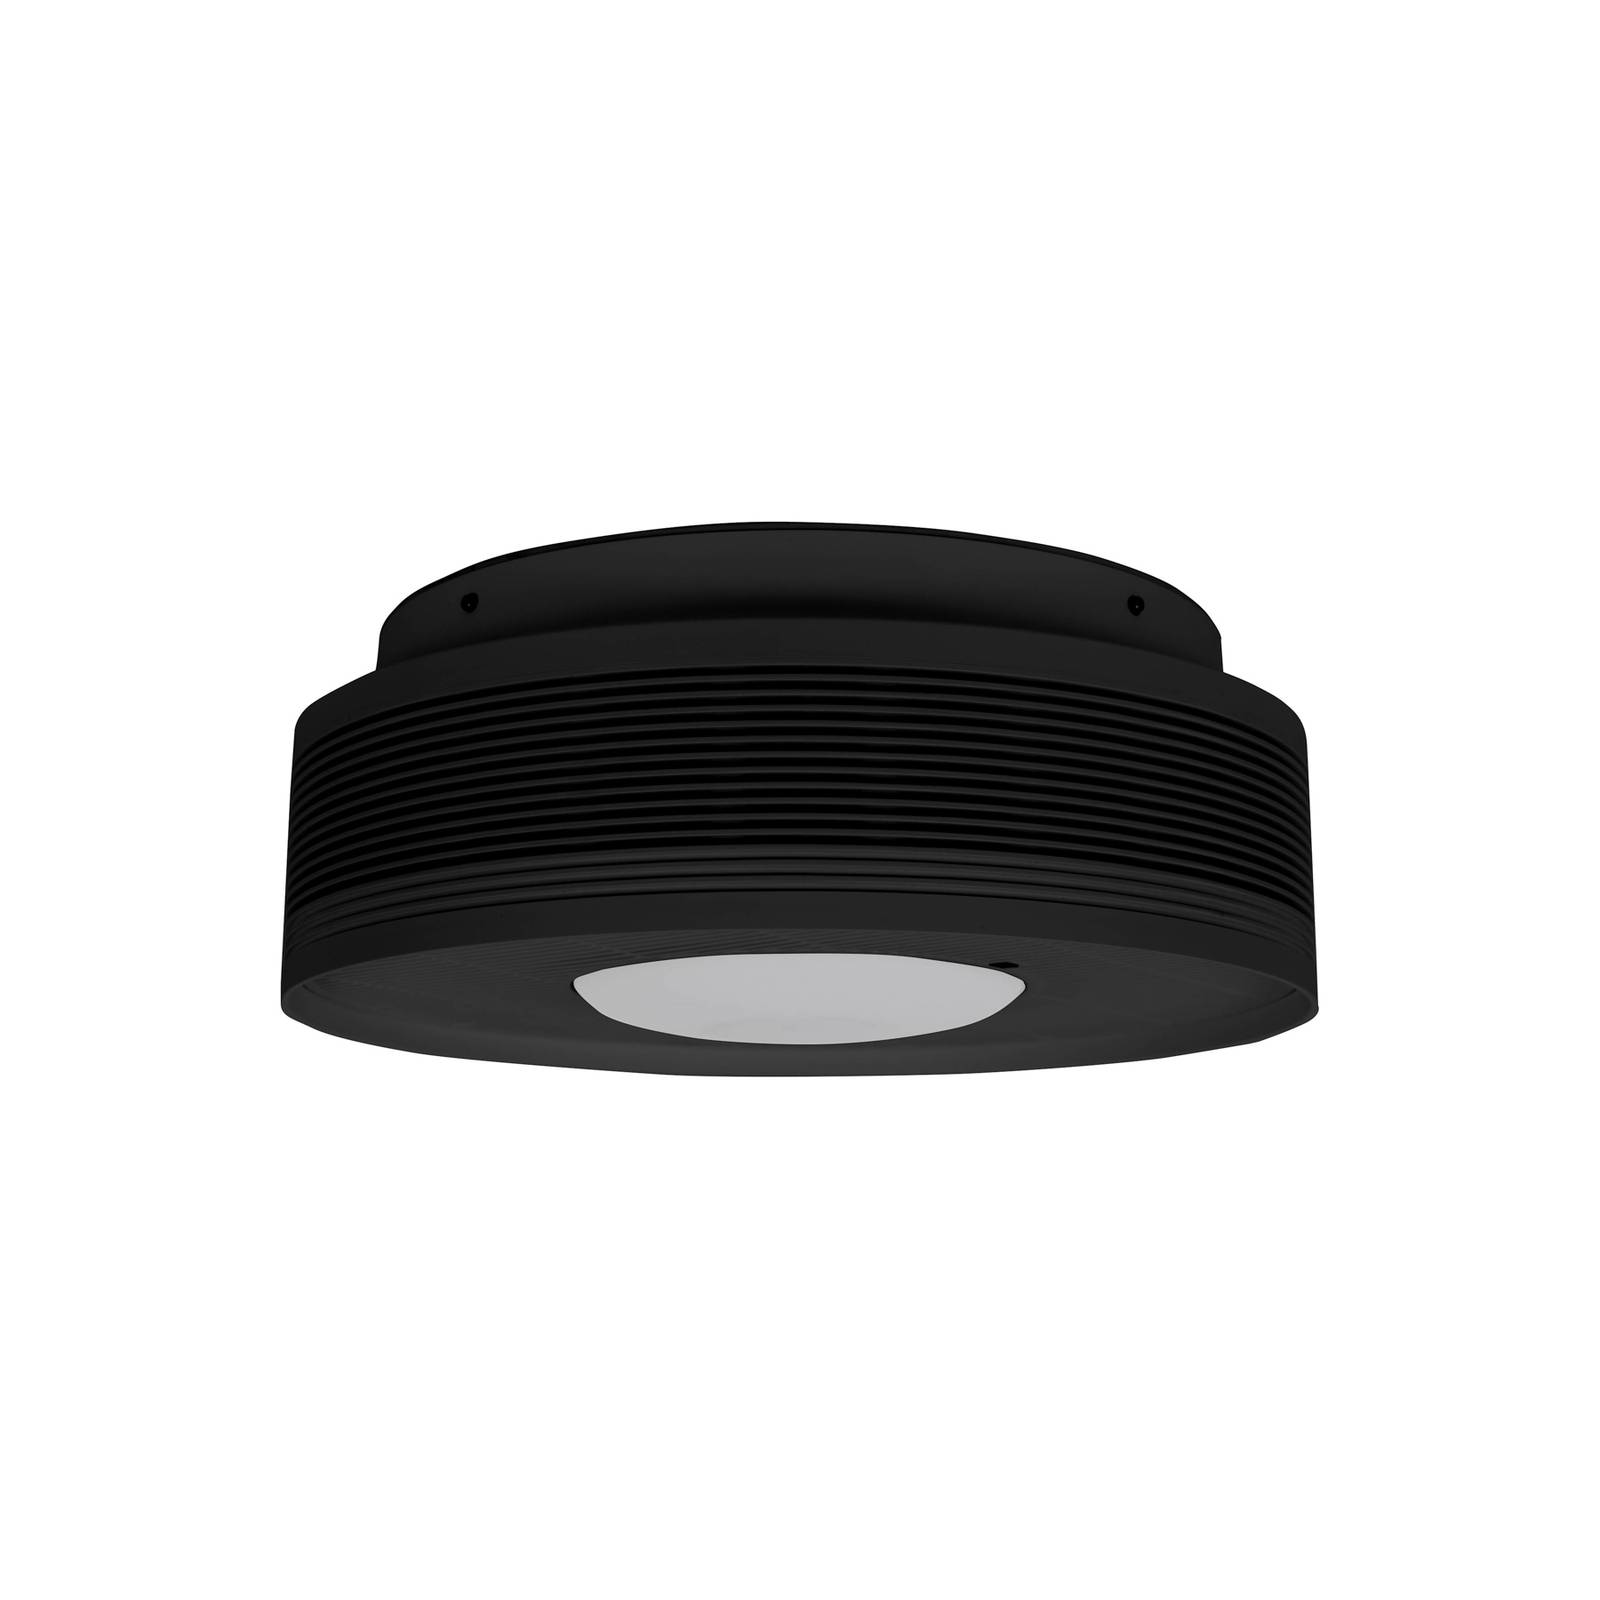 Beacon Lighting Luftreiniger Sanso mit Beleuchtung, schwarz